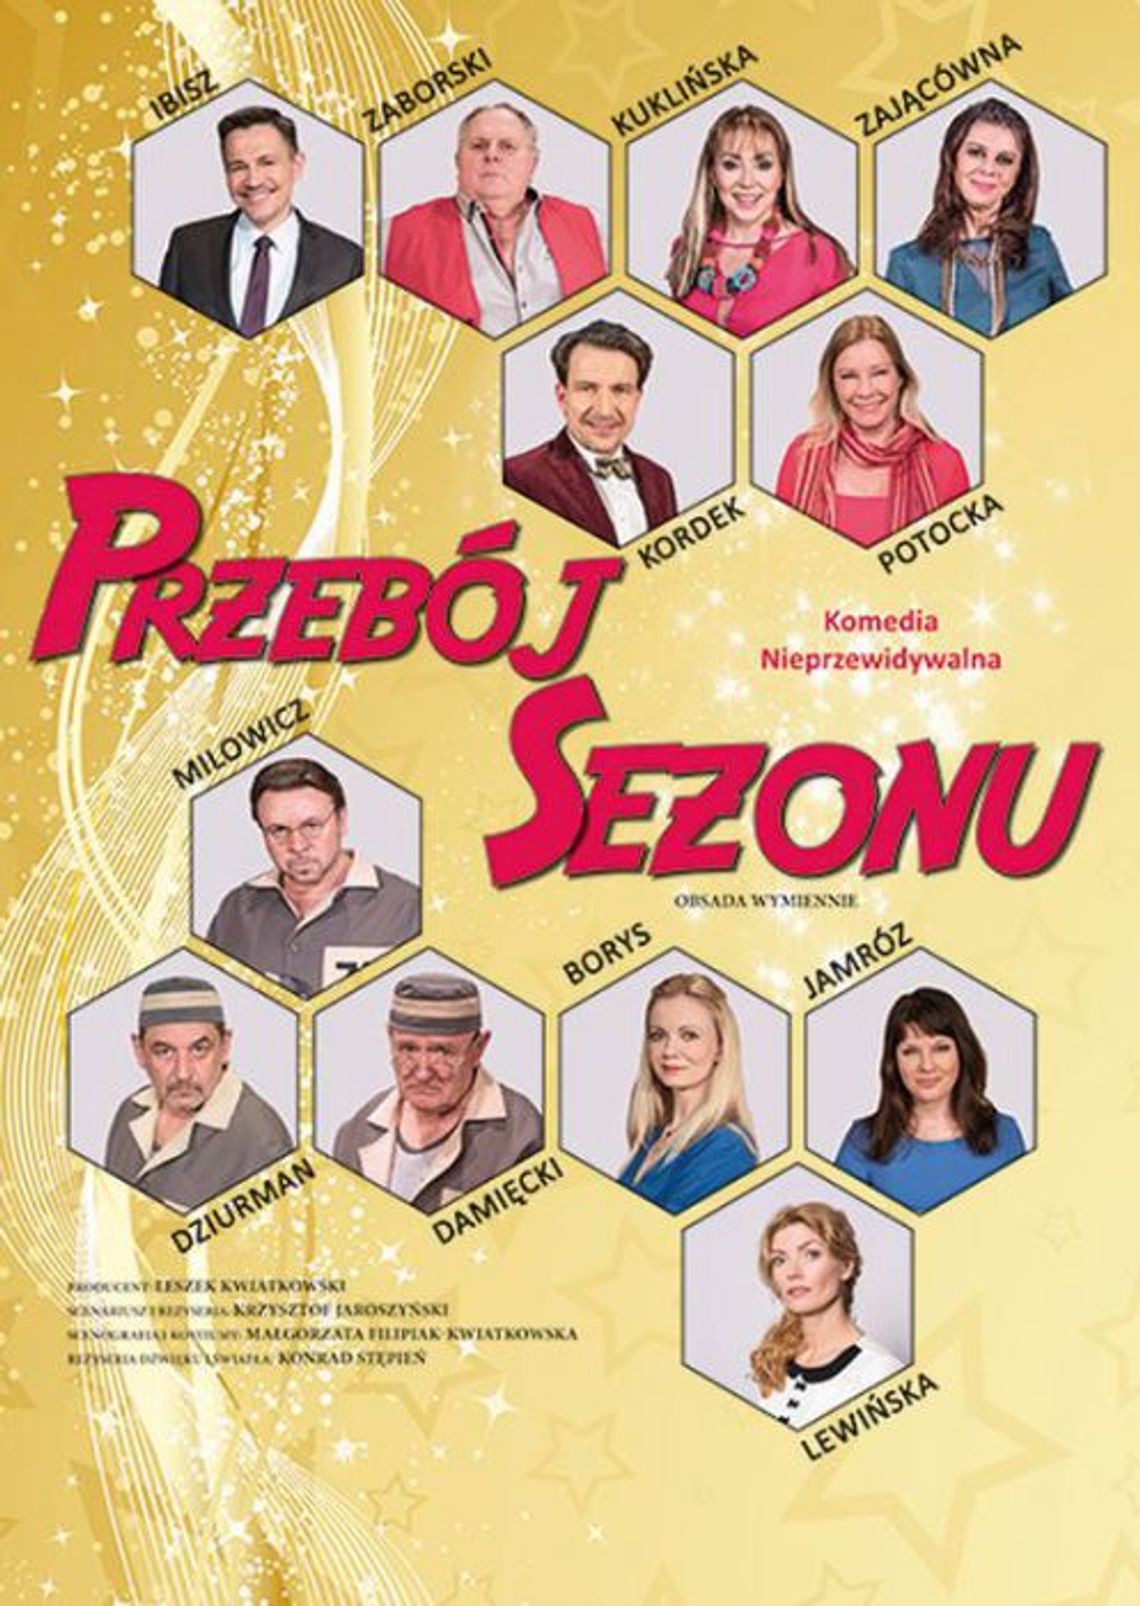 Hrubieszów:  „Przebój sezonu” - komediowy spektakl w HDK